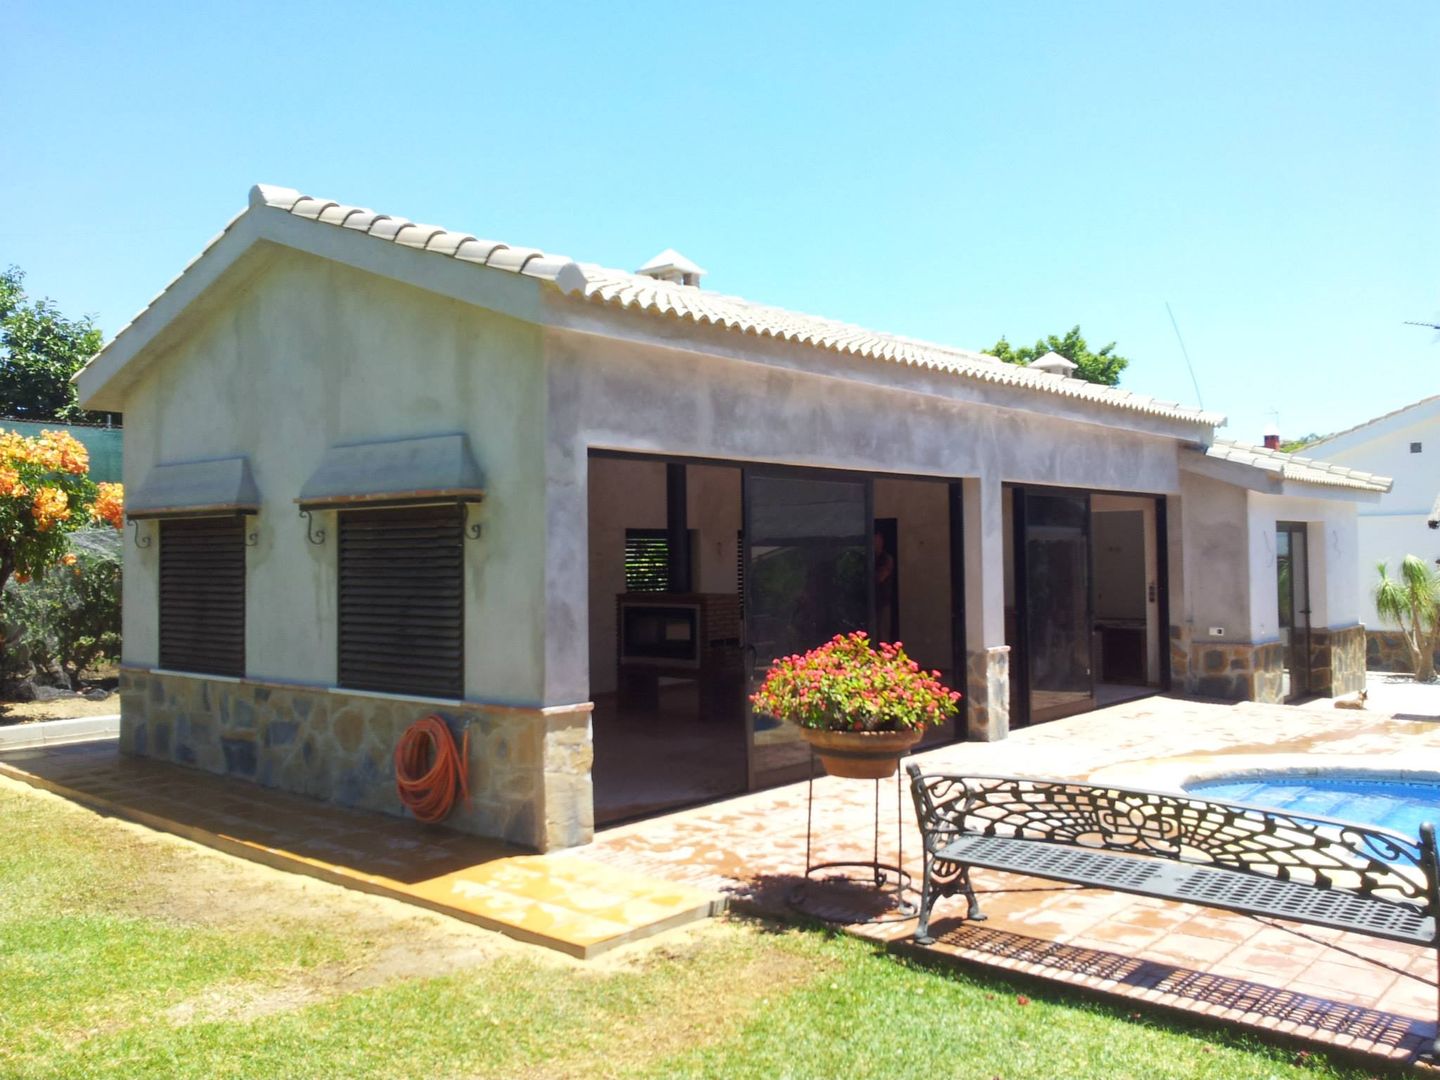 Casa de piscina - La Sierrezuela, gsformato gsformato Klassische Häuser